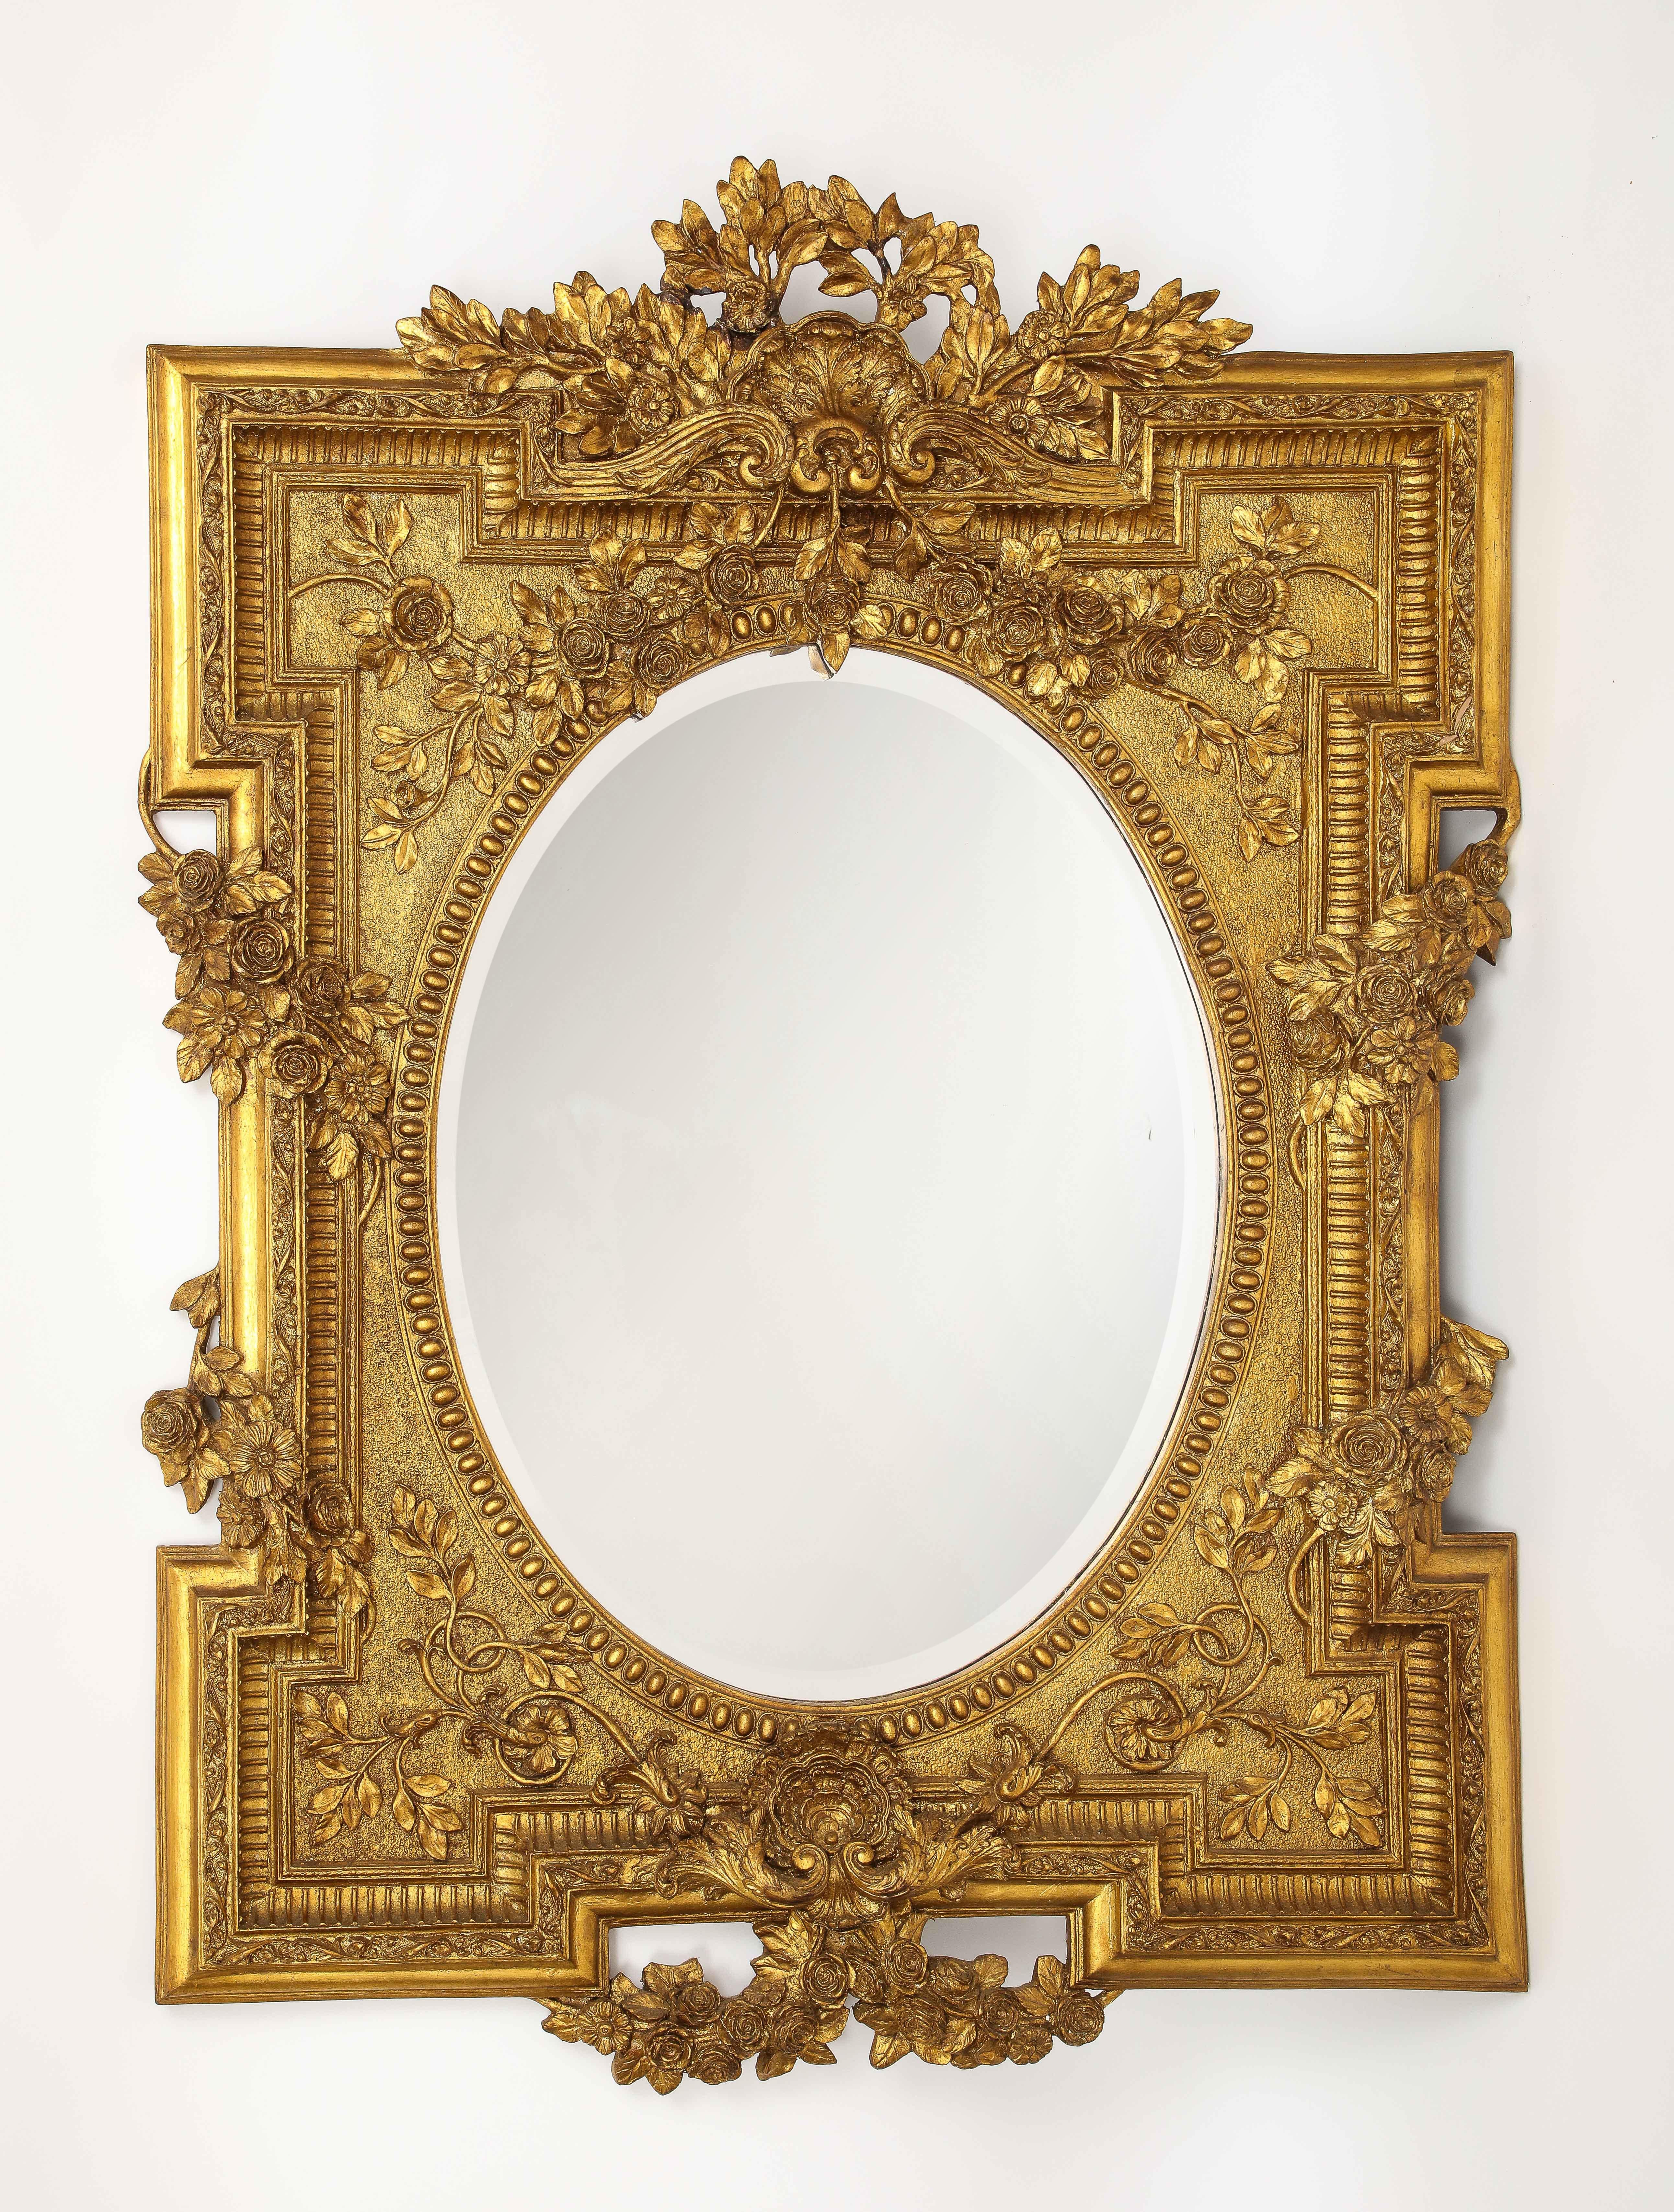 Eine wunderbare Französisch 1950's Giltwood Louis XVI Stil Hand geschnitzt abgeschrägten Spiegel mit Floral Vine Designs. Der Rahmen aus vergoldetem Holz ist wunderschön handgeschnitzt und mit 24-karätigem Gold vergoldet. Die Qualität und